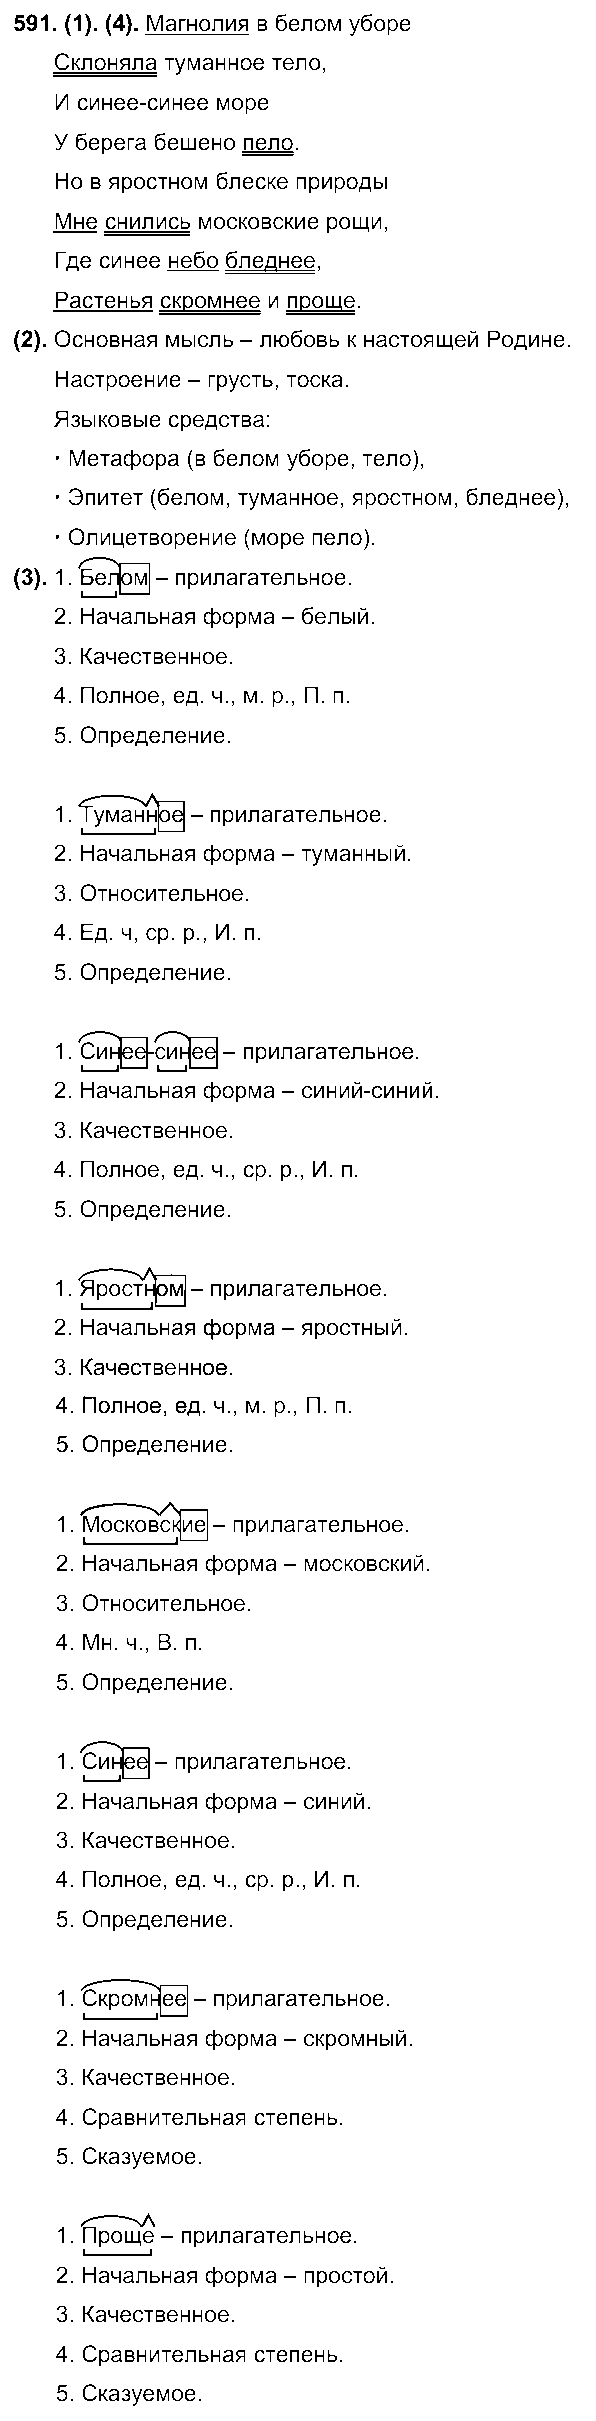 ГДЗ Русский язык 7 класс - 591